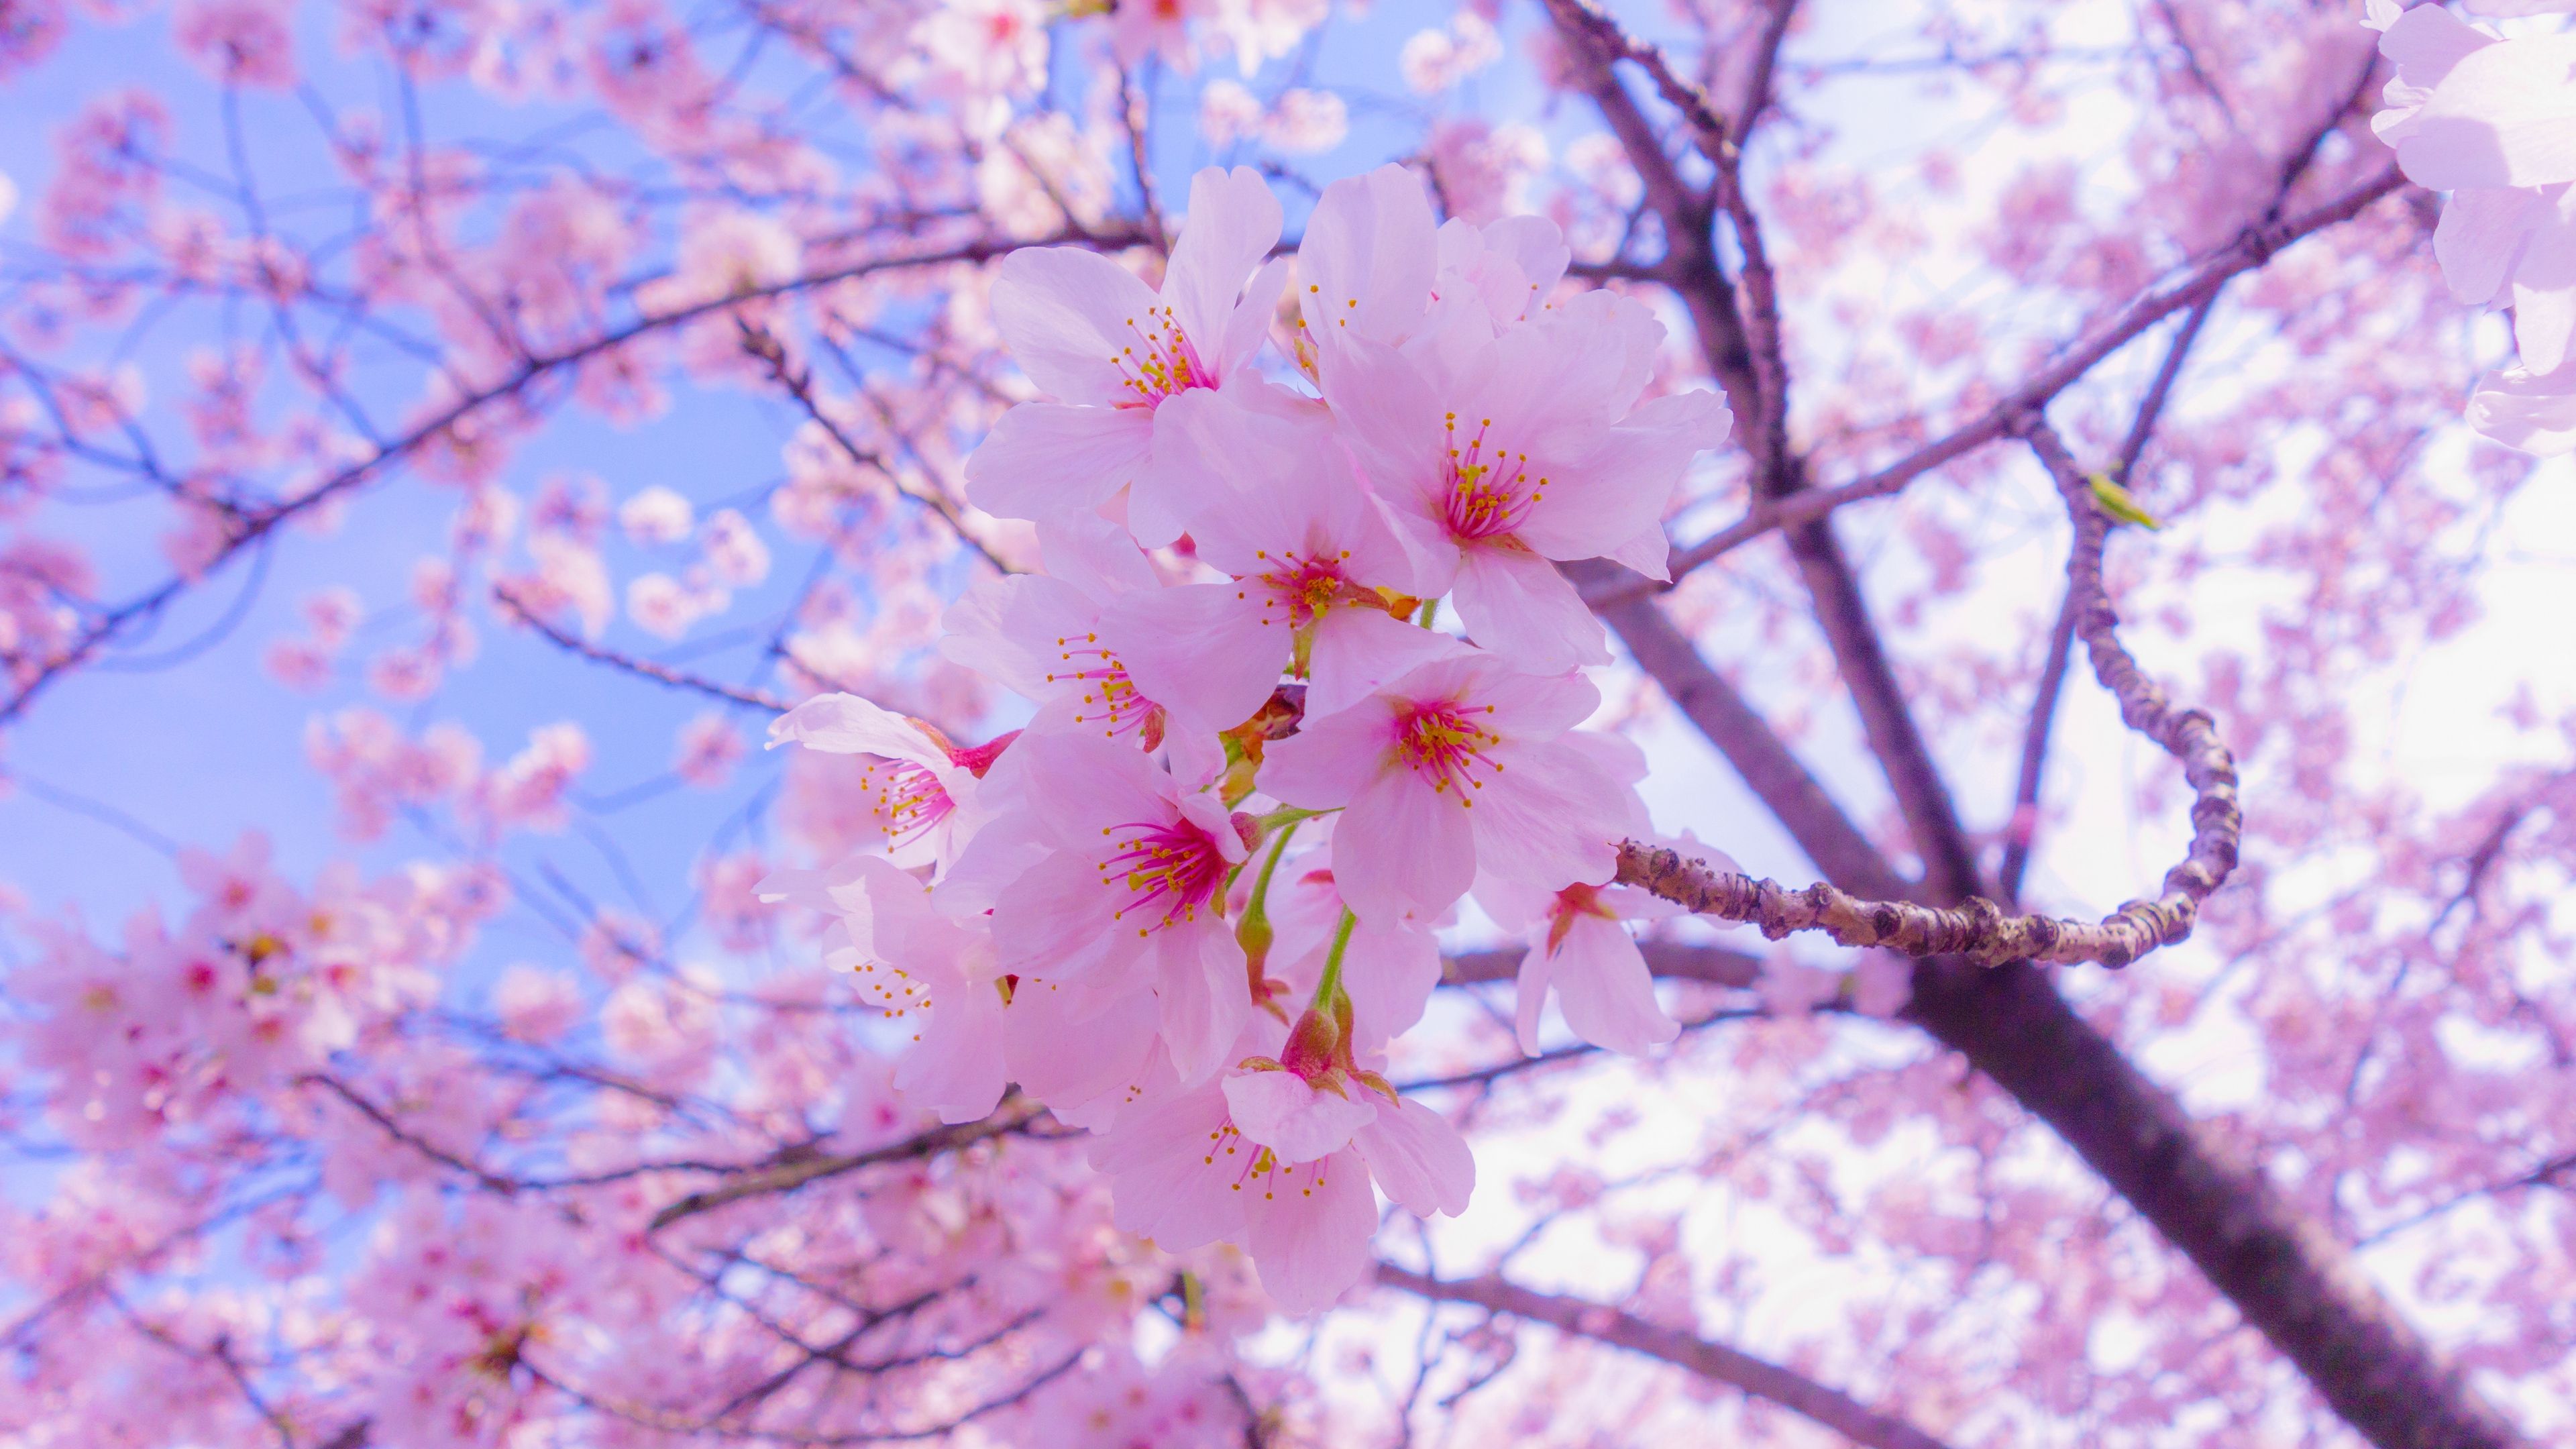 دانلود عکس شکوفه گیلاس بهاری زیبا با کیفیت بسیار بالا